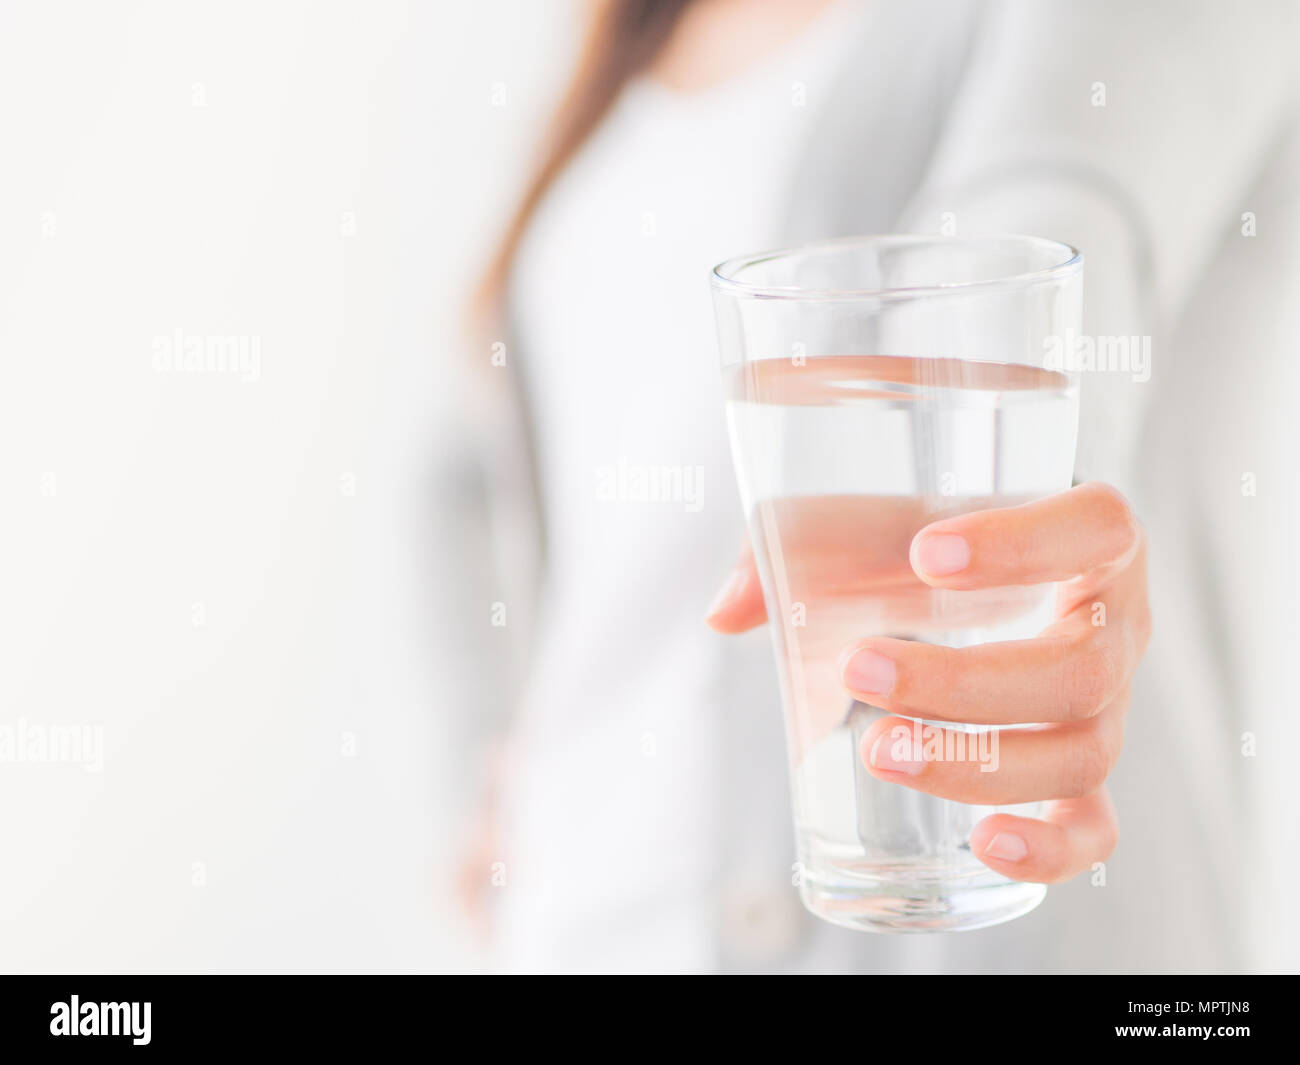 Не дали стакан воды. Женская рука со стаканом воды. Стакан воды в руке. Держит стакан с водой. Девушка держит стакан воды.